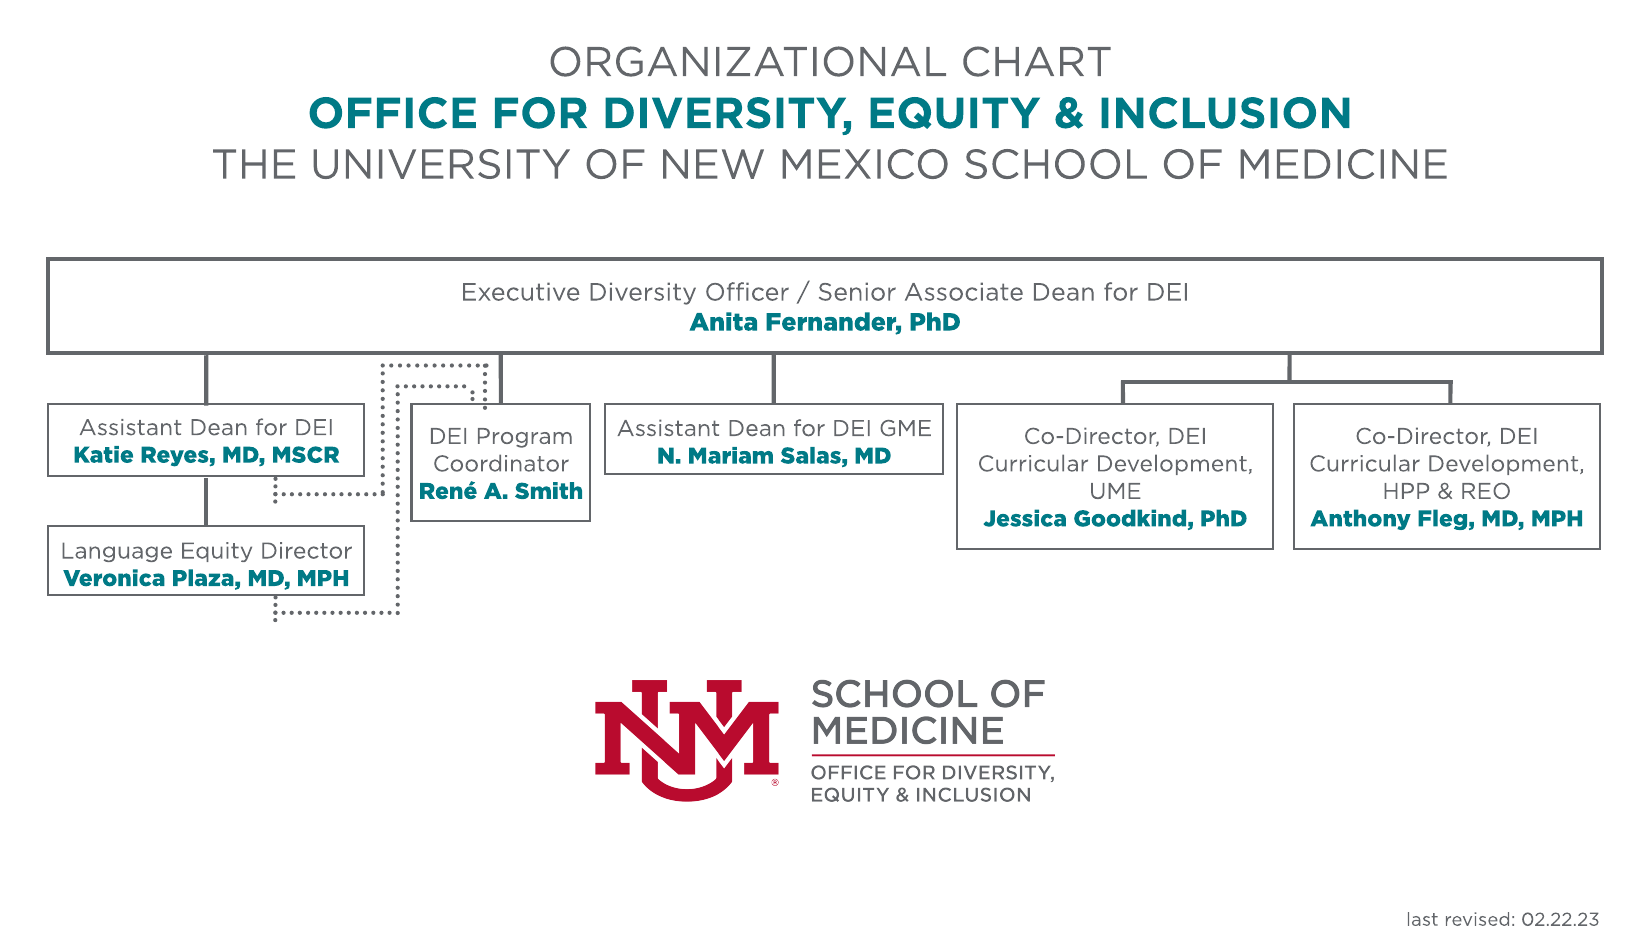 organigrama de la Oficina de Diversidad, Equidad e Inclusión de la Facultad de Medicina de la UNM